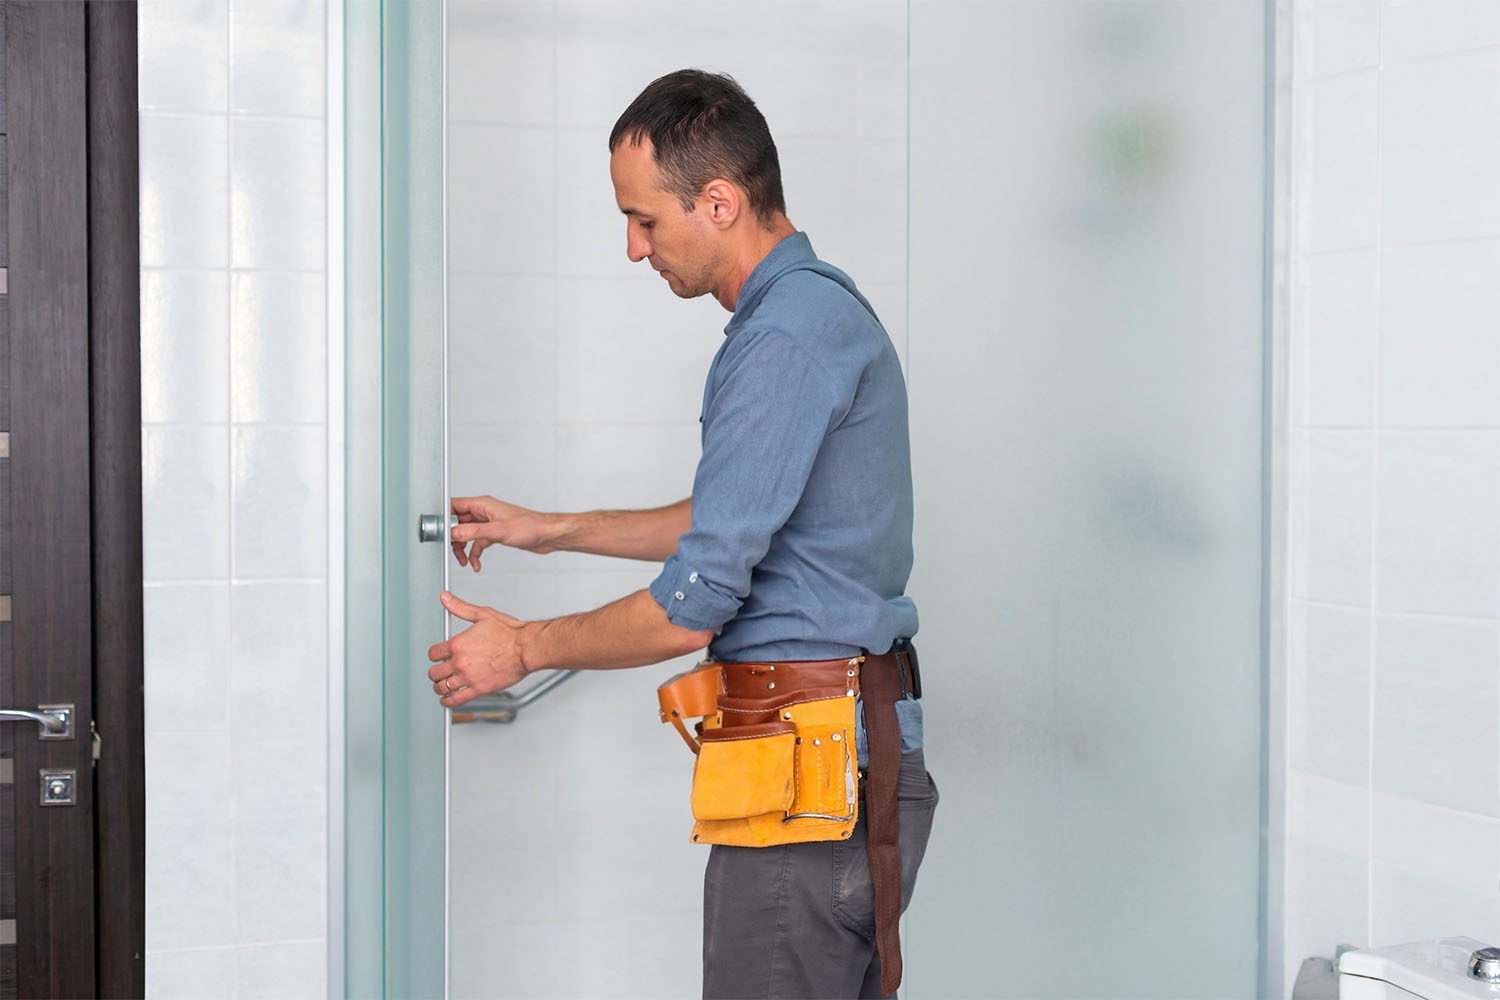 Maintenance staff fixes a shower door, wearing a toolbelt.